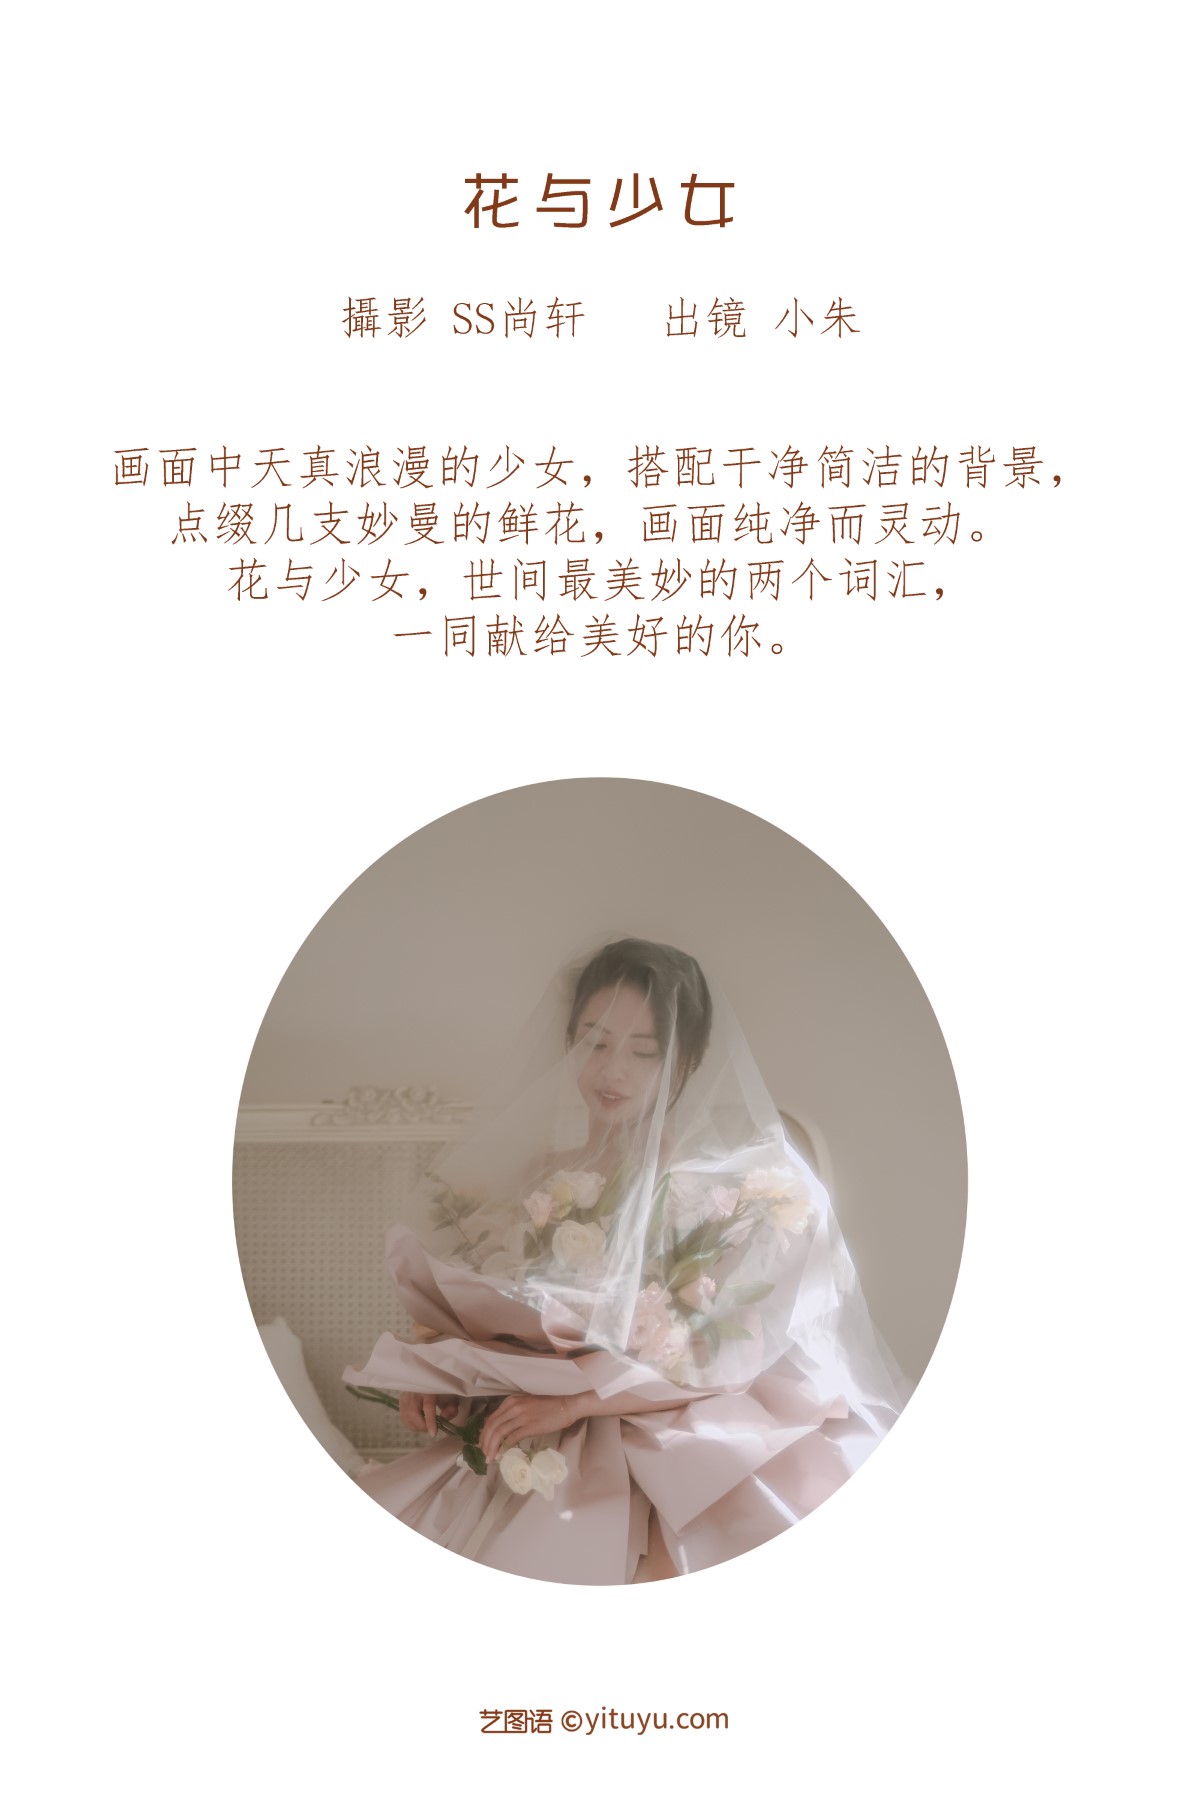 YiTuYu艺图语 Vol 1842 Xiao Zhu 0001 0353443988.jpg